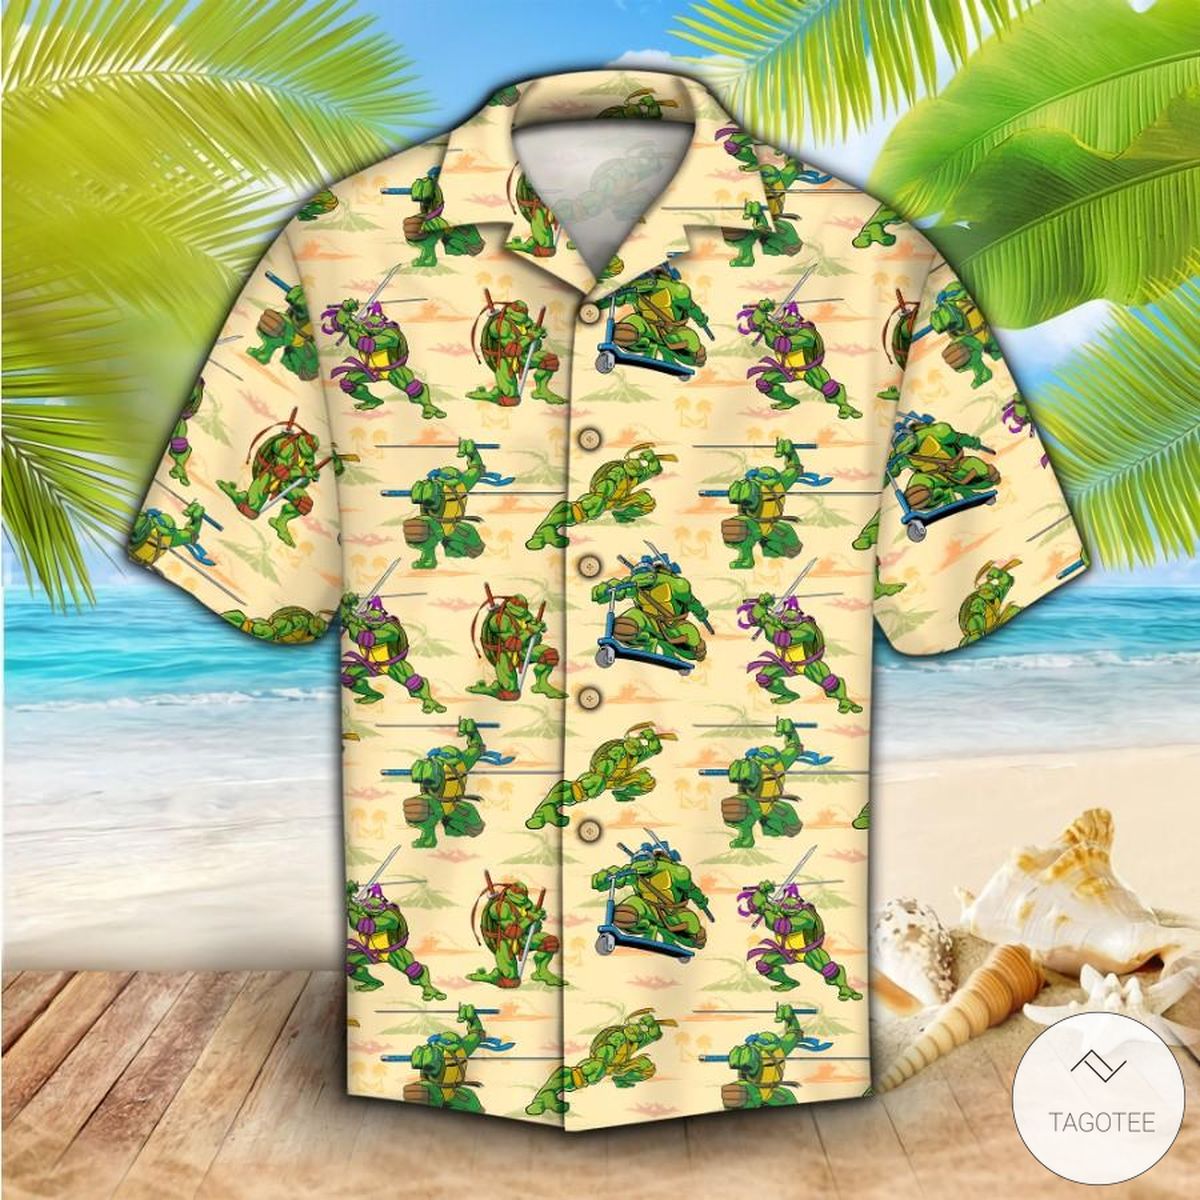 The Teenage Mutant Ninja Turtles TMNT Hawaiian Shirt